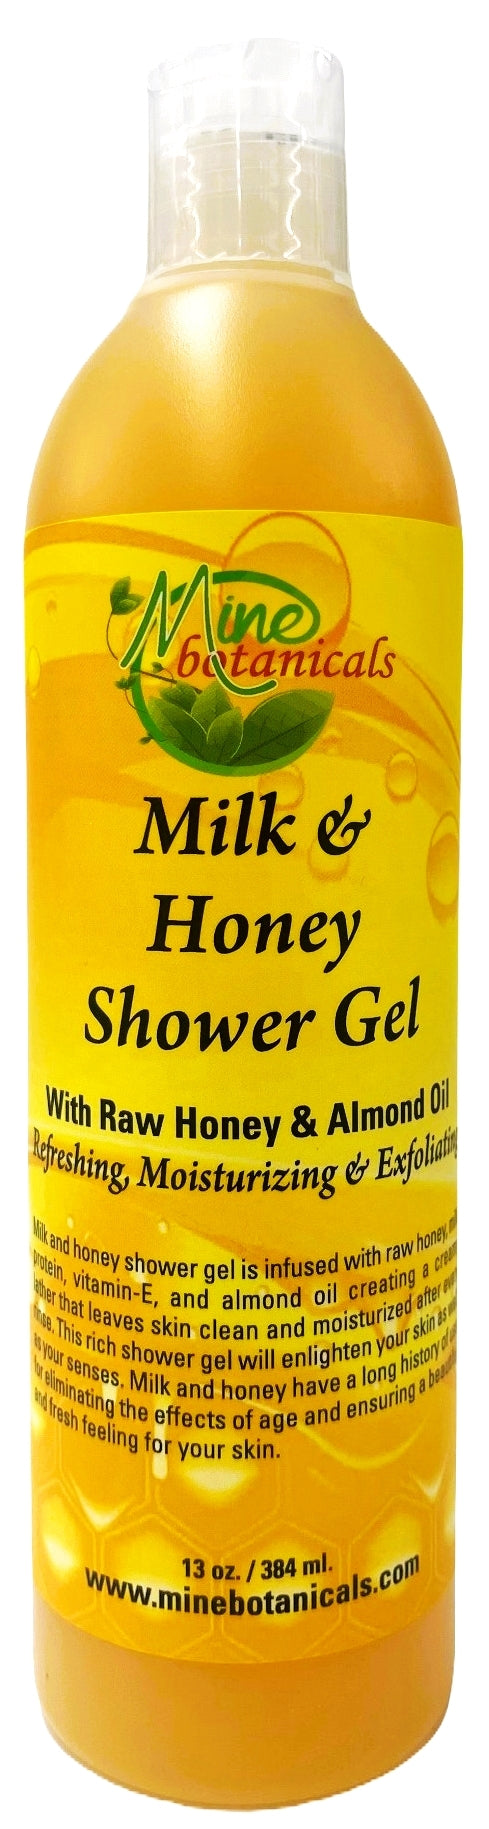 Milk & Honey Shower Gel